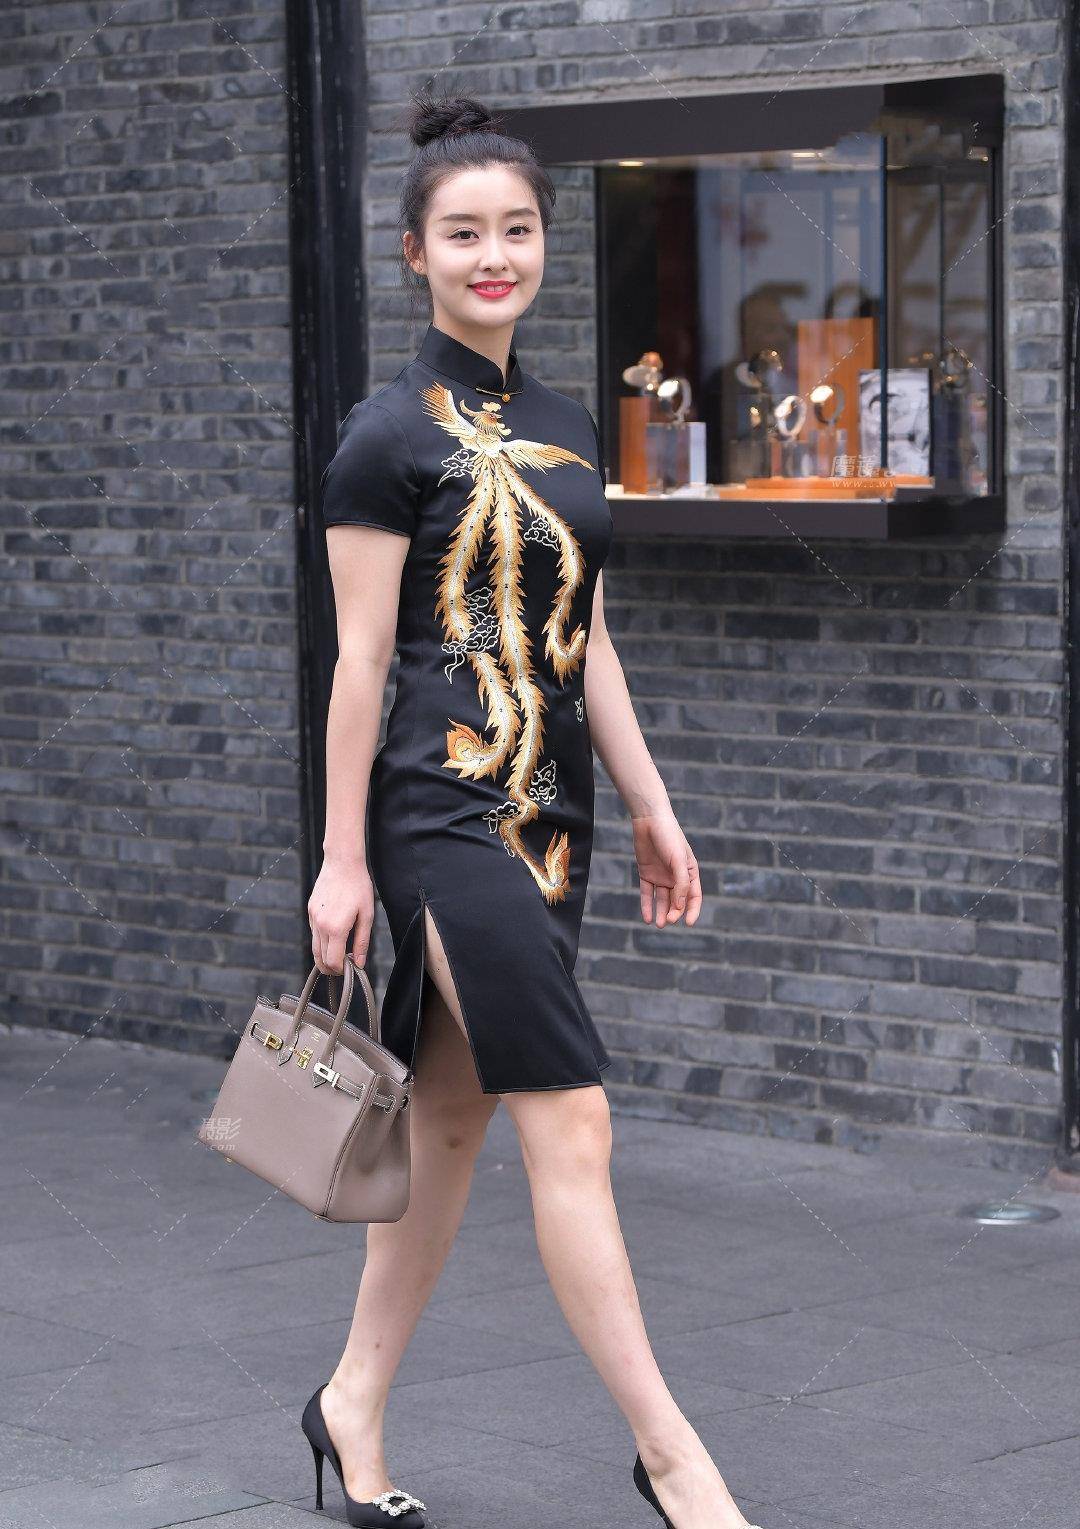 旗袍作为一款华人女性的服装被誉为国粹,它有着非常高的仪式感